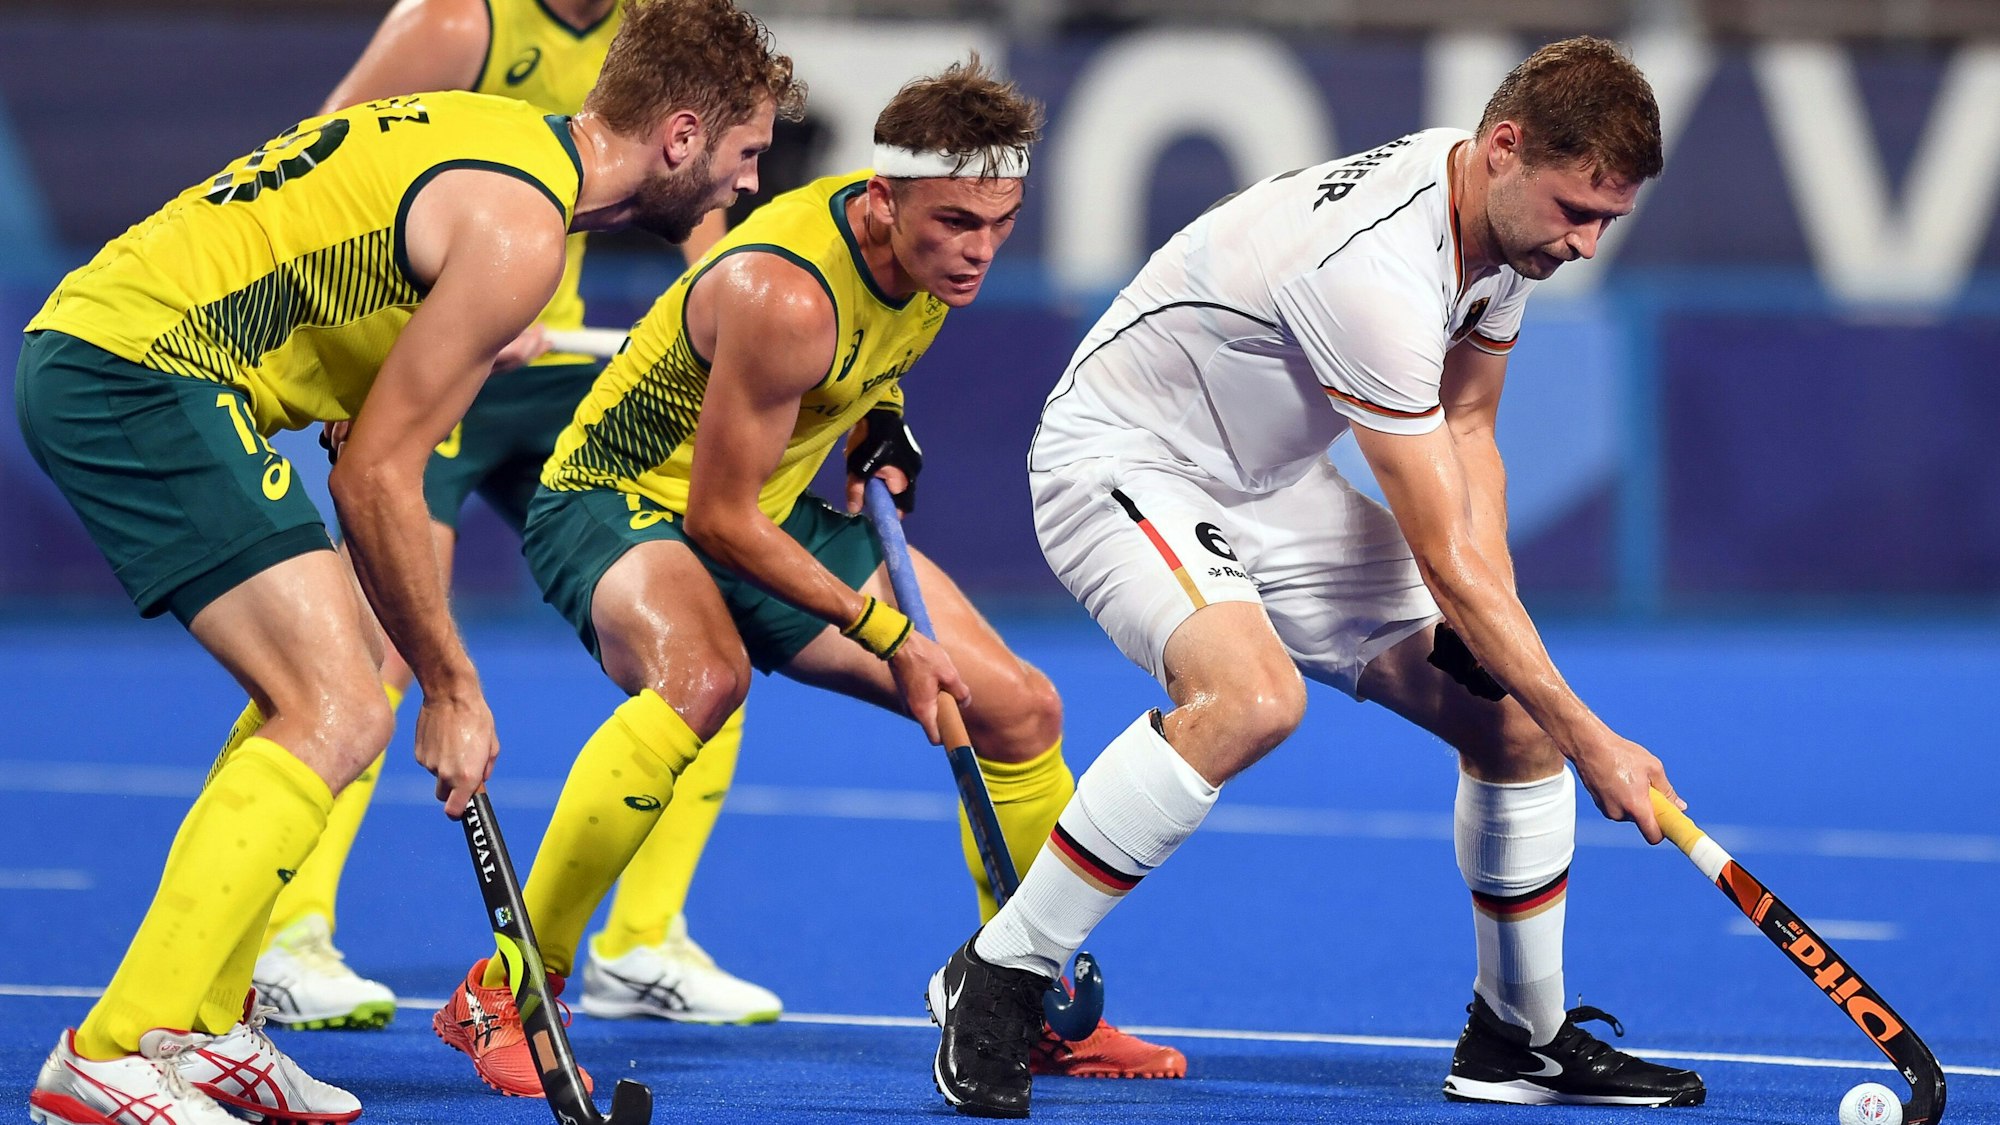 Hockey-Nationalspieler Martin Häner kämpft im Halbfinale der Olympischen Spiele gegen zwei Australier um den Ball